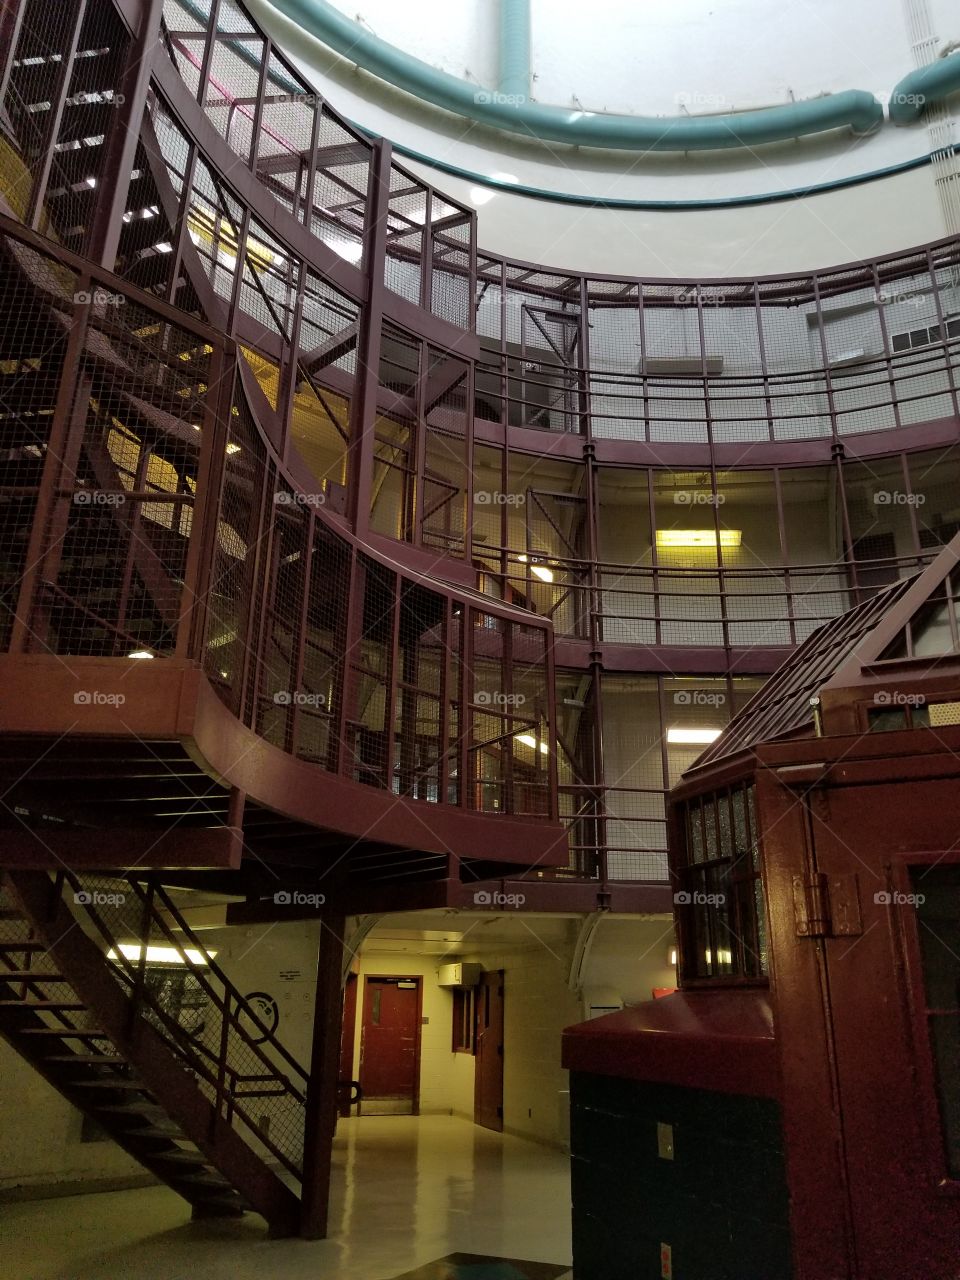 Kingston jail